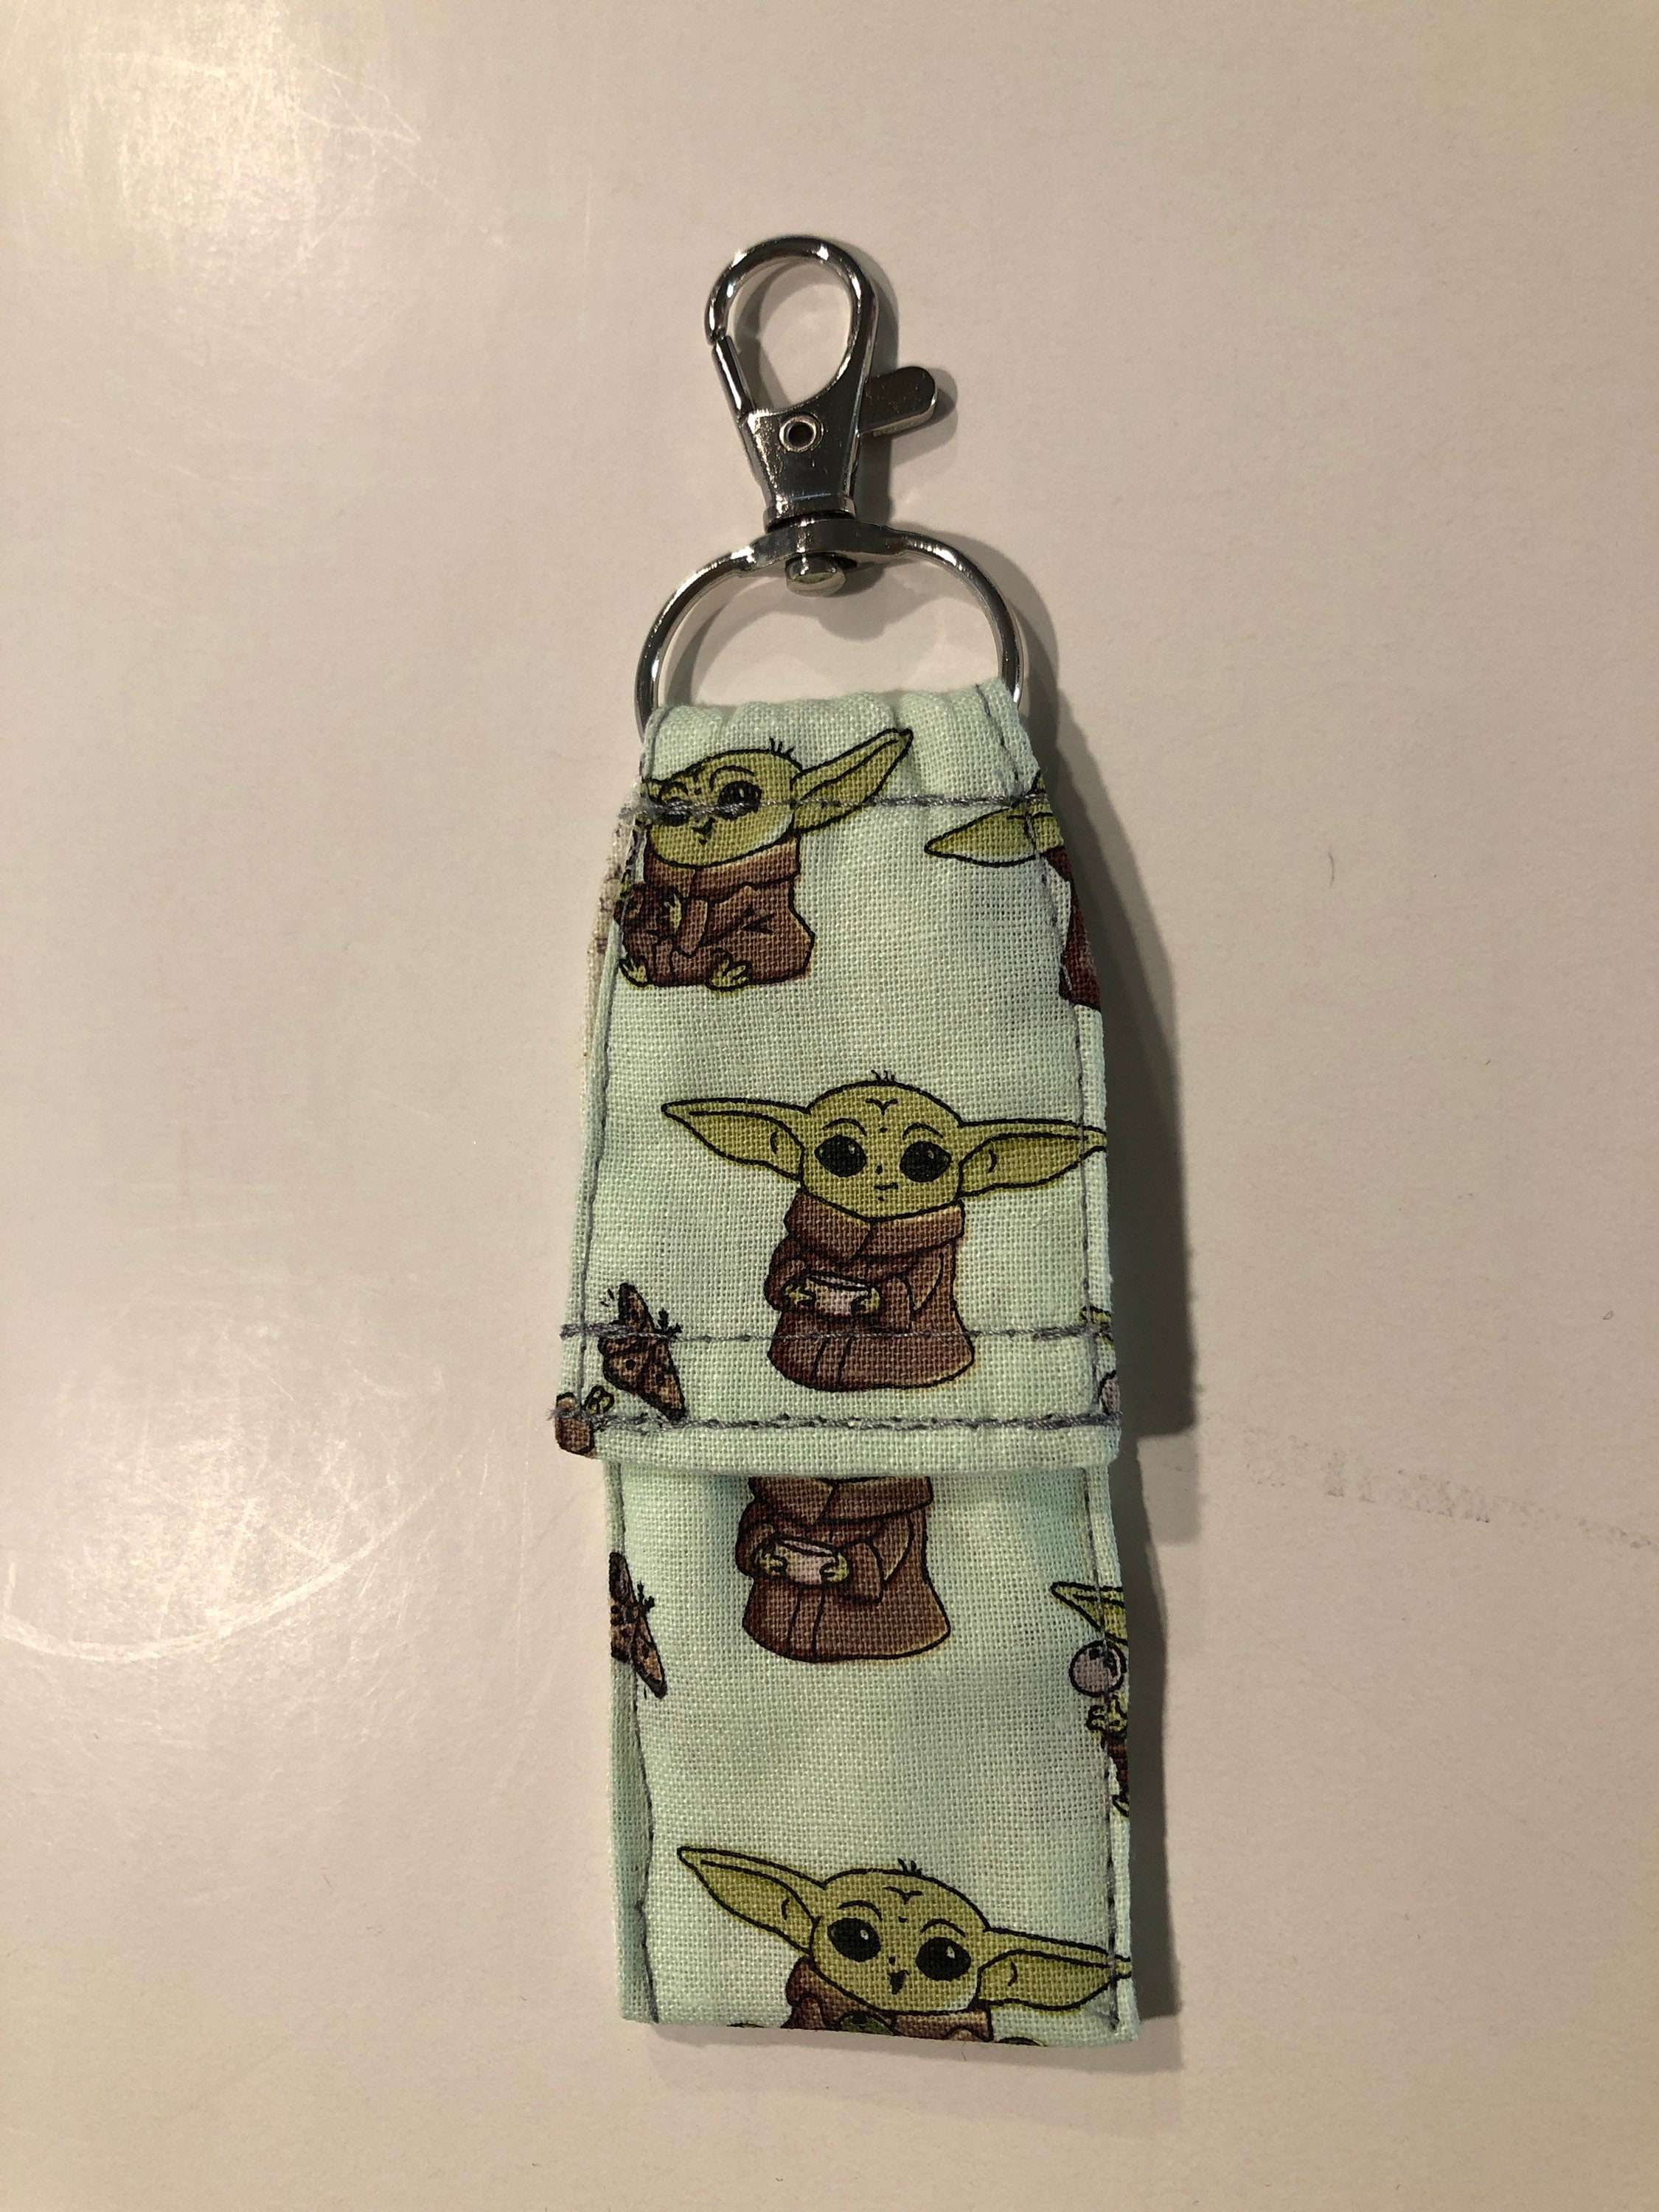 After8handmade - Star Wars chapstick holder keychains! 😊🙌🏻$6